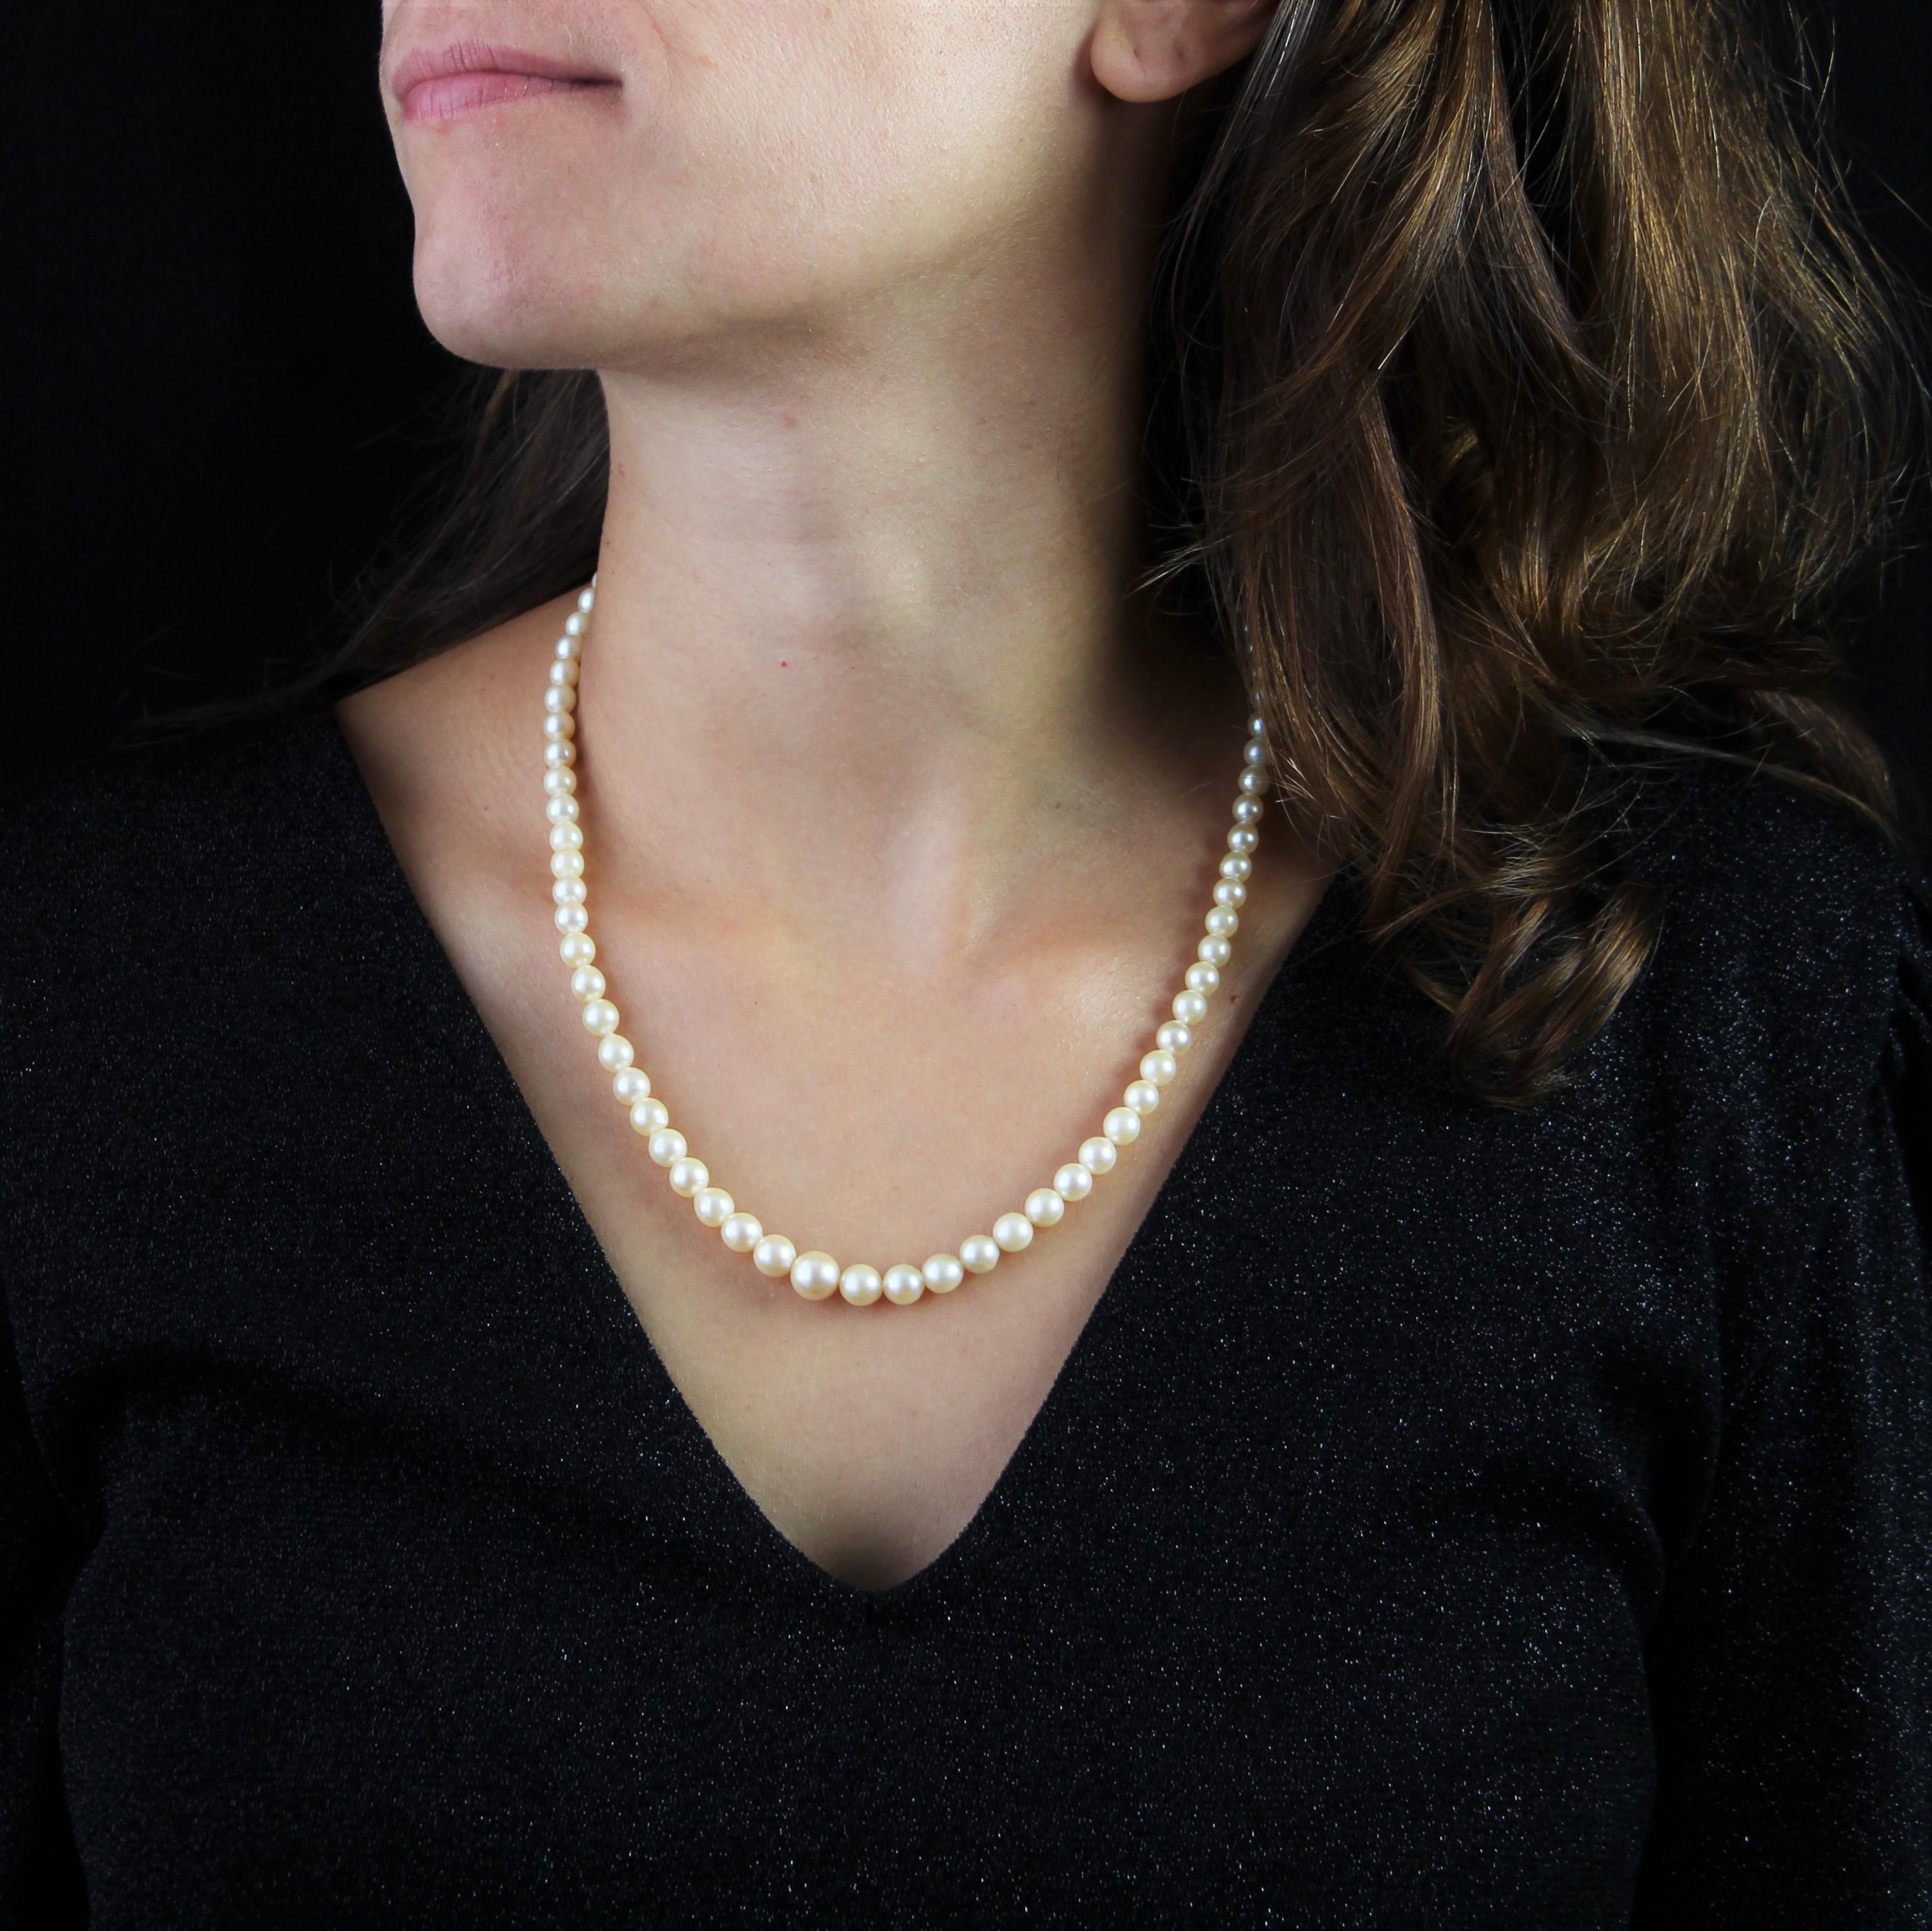 Halskette aus Zuchtperlen im Herbst, mit perlweißem Orient.
Die Perlen werden von einer 18 Karat Weißgoldschließe gehalten, mit Sicherheit, und auf seiner Oberseite von 3 halben Zuchtperlen verziert.
Durchmesser der Perlen: von 3/3,5 mm bis 7,5/8